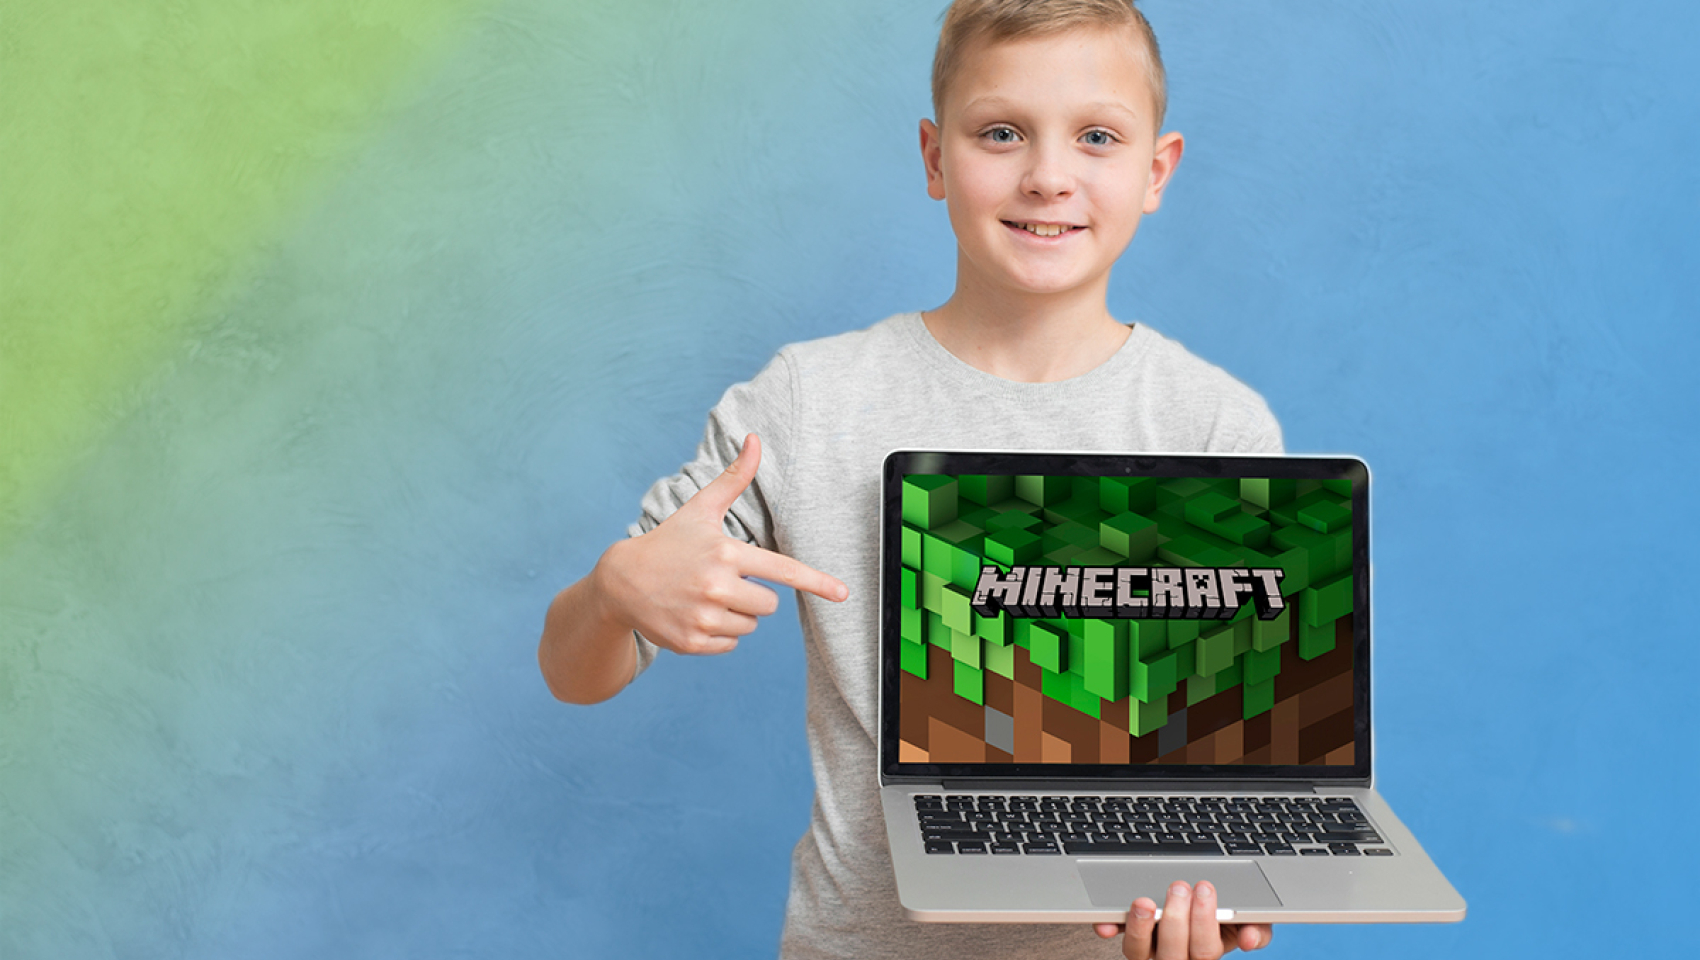 Відкритий урок «Як навчити дитину програмуванню за допомогою Minecraft?» 24 лютого у Києві